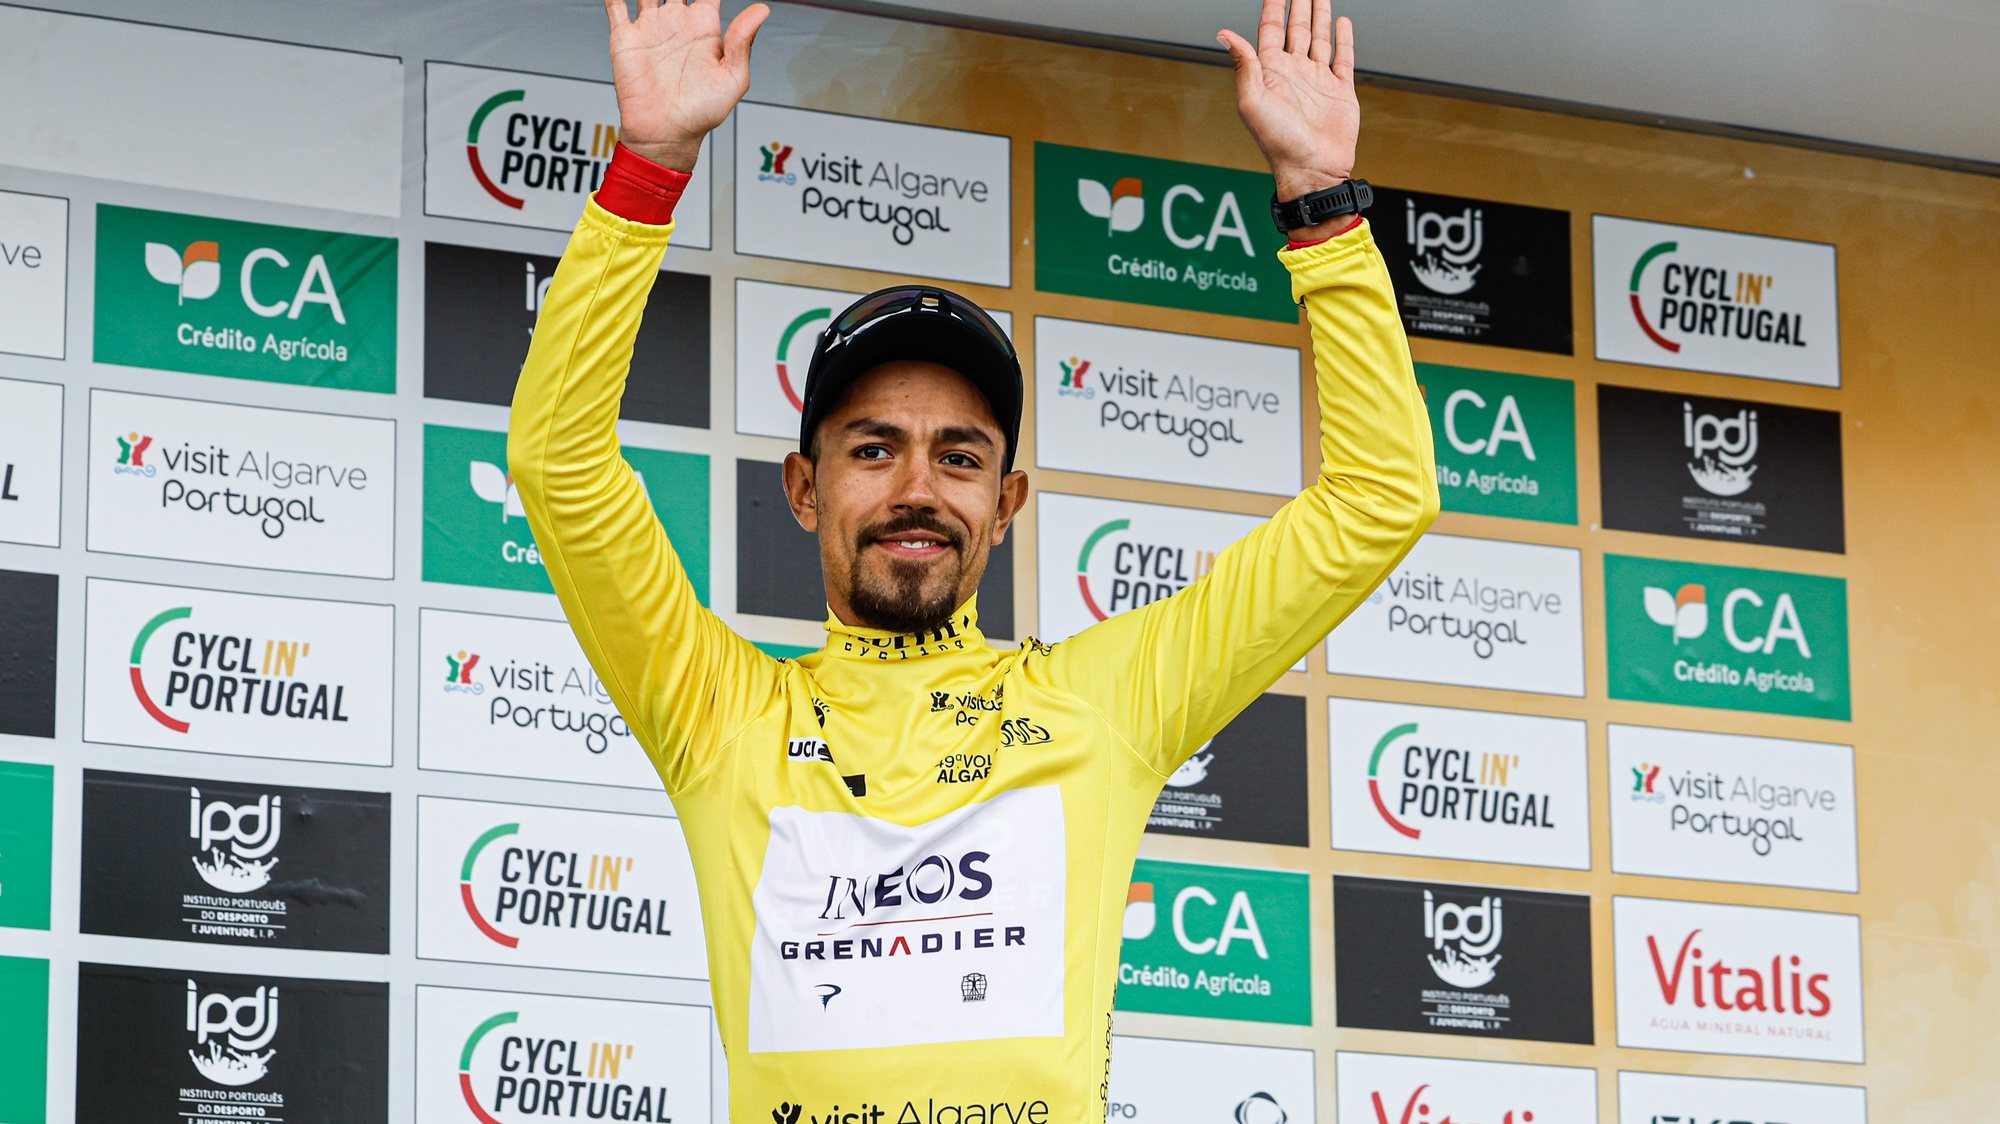 O ciclista Daniel Martinez da equipa da Ineos Grenadiers foi o vencedor  da 49ª Volta ao Algarve em bicicleta, que terminou hoje em Lagoa,19 de fevereiro de 2023. LUÍS FORRA/LUSA